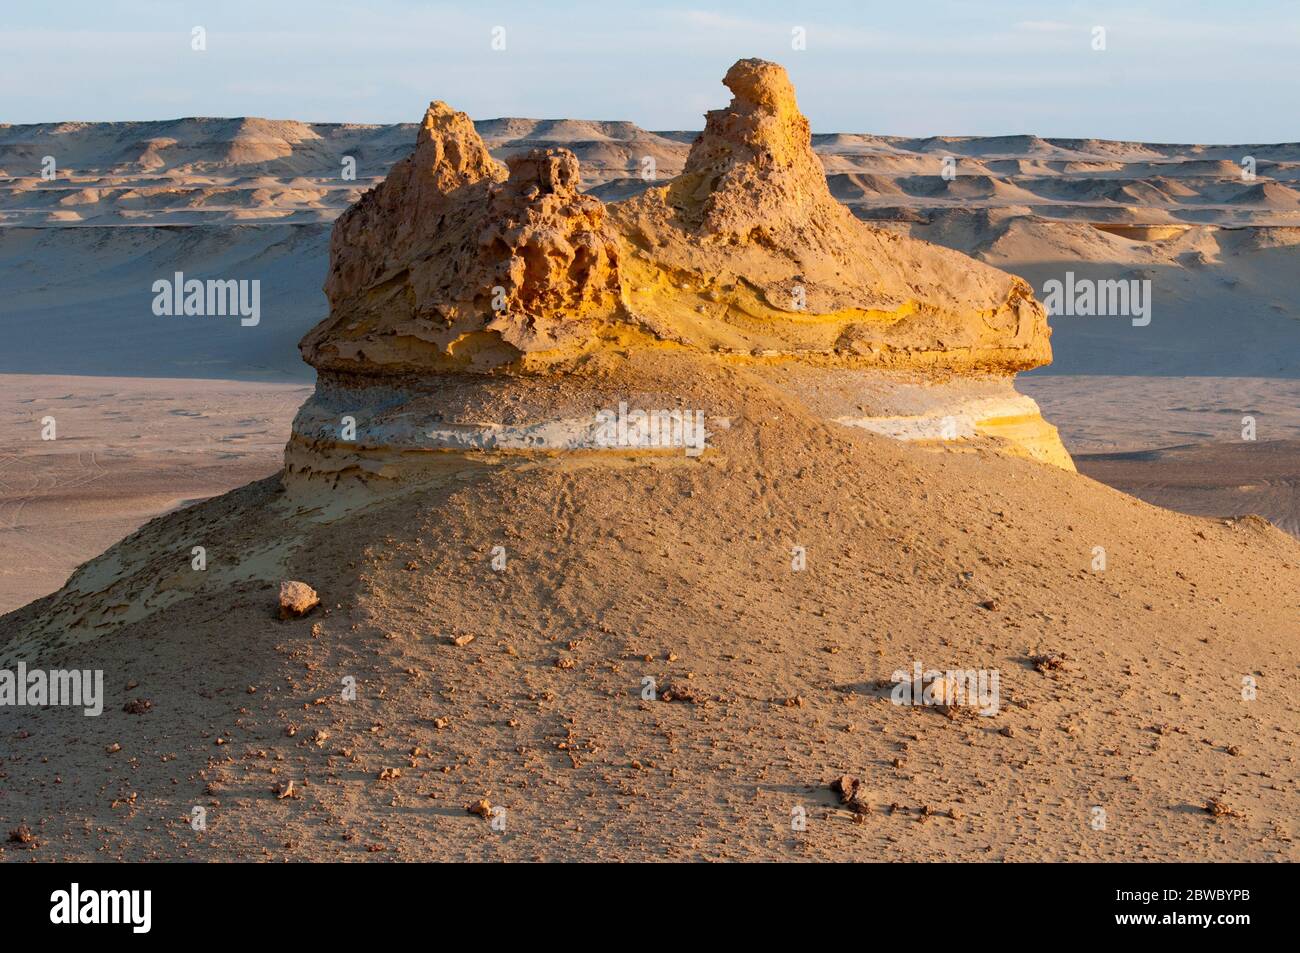 Le forme del deserto formate dall'erosione del vento a Wadi El Hitan, Valle dei fossili, nel deserto occidentale dell'Egitto Foto Stock